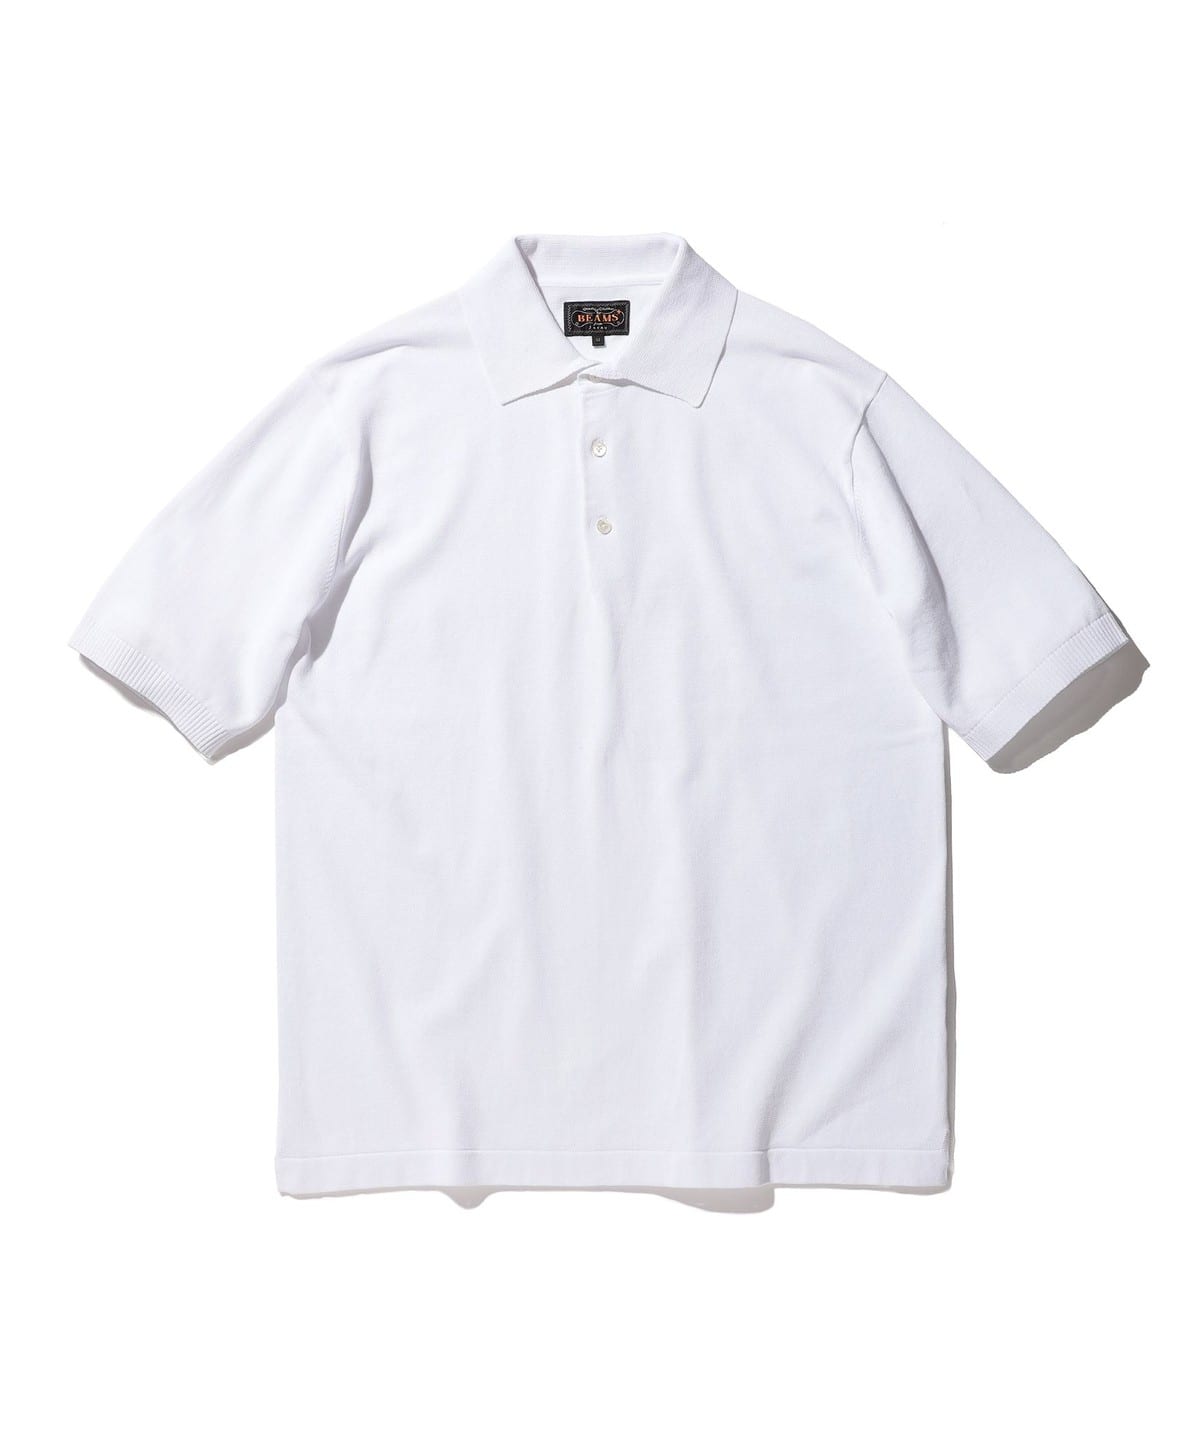 正規代理店経由 ビームスゴルフ ポロシャツ XL 白 ペイズリー柄 半袖